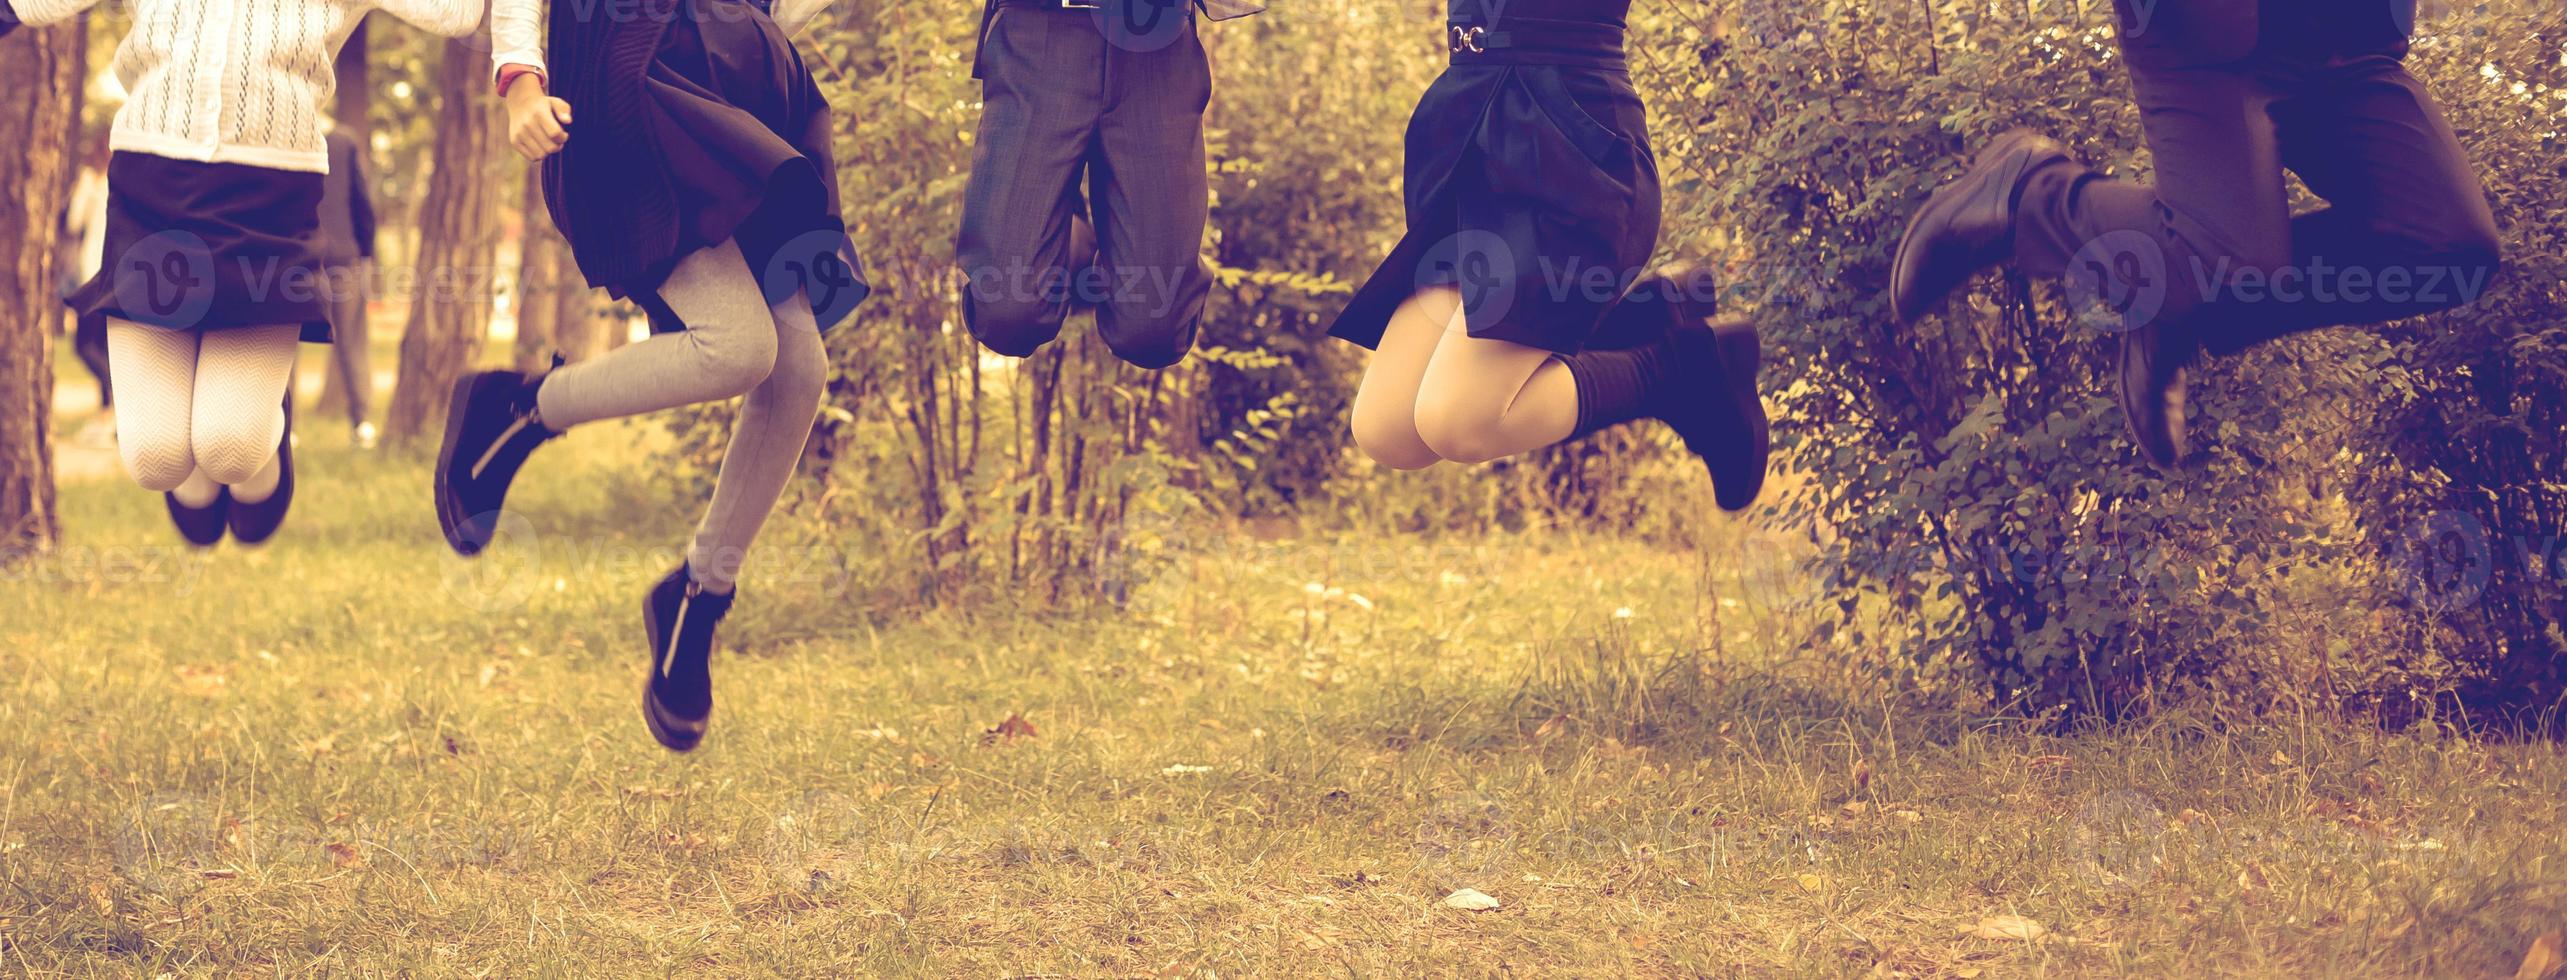 niños saltando en un huerto día de verano foto